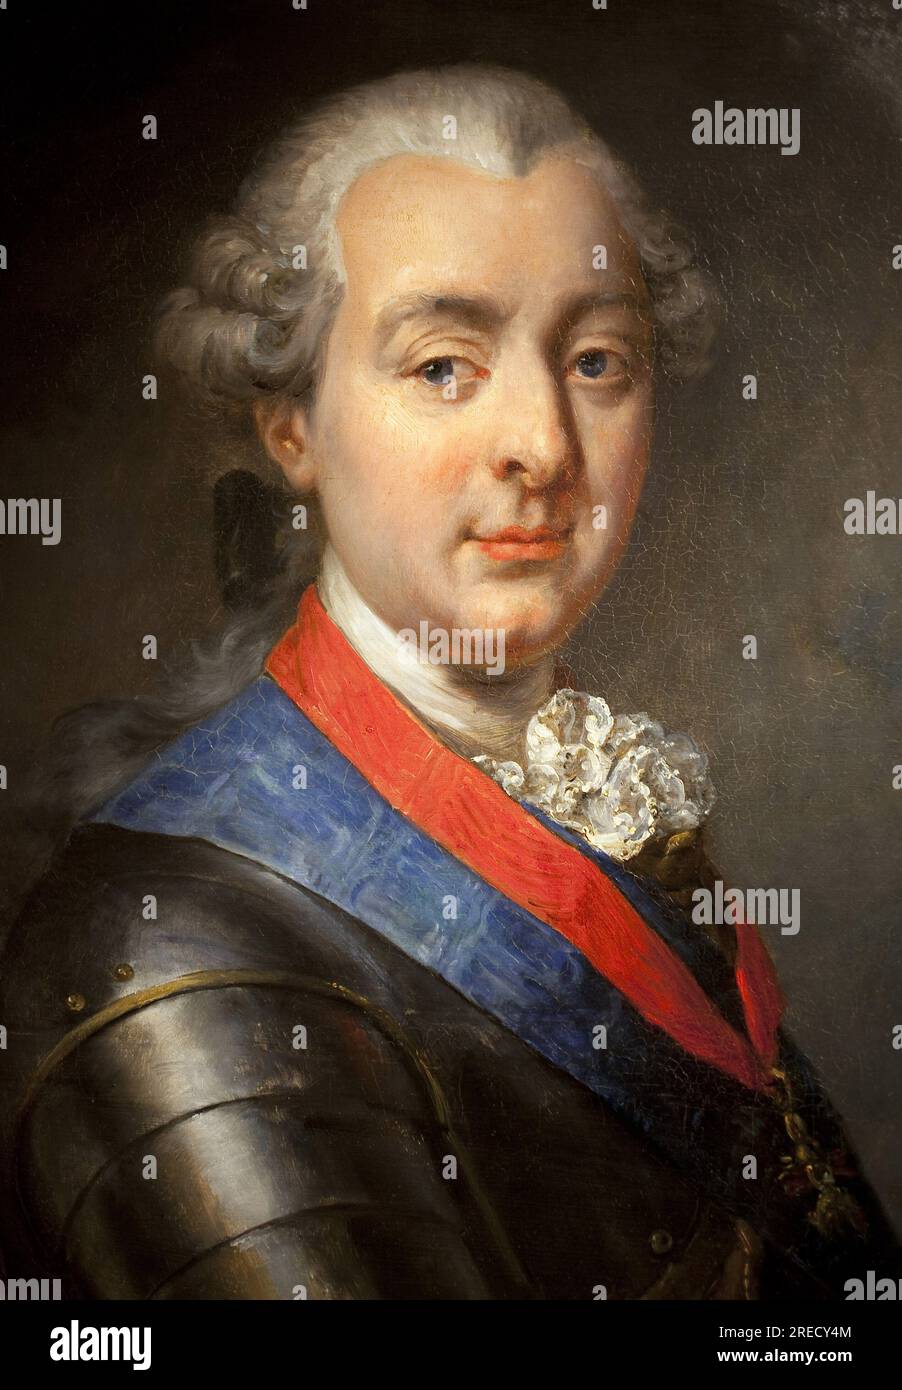 Portrait de Louis Jean Marie de Bourbon, duc de Penthievre (1725-1793), Grand amiral et mecene. Peinture de Jean Pierre Franque (1774-1860), huile sur toile, 1839. musee de Port Louis. Foto Stock